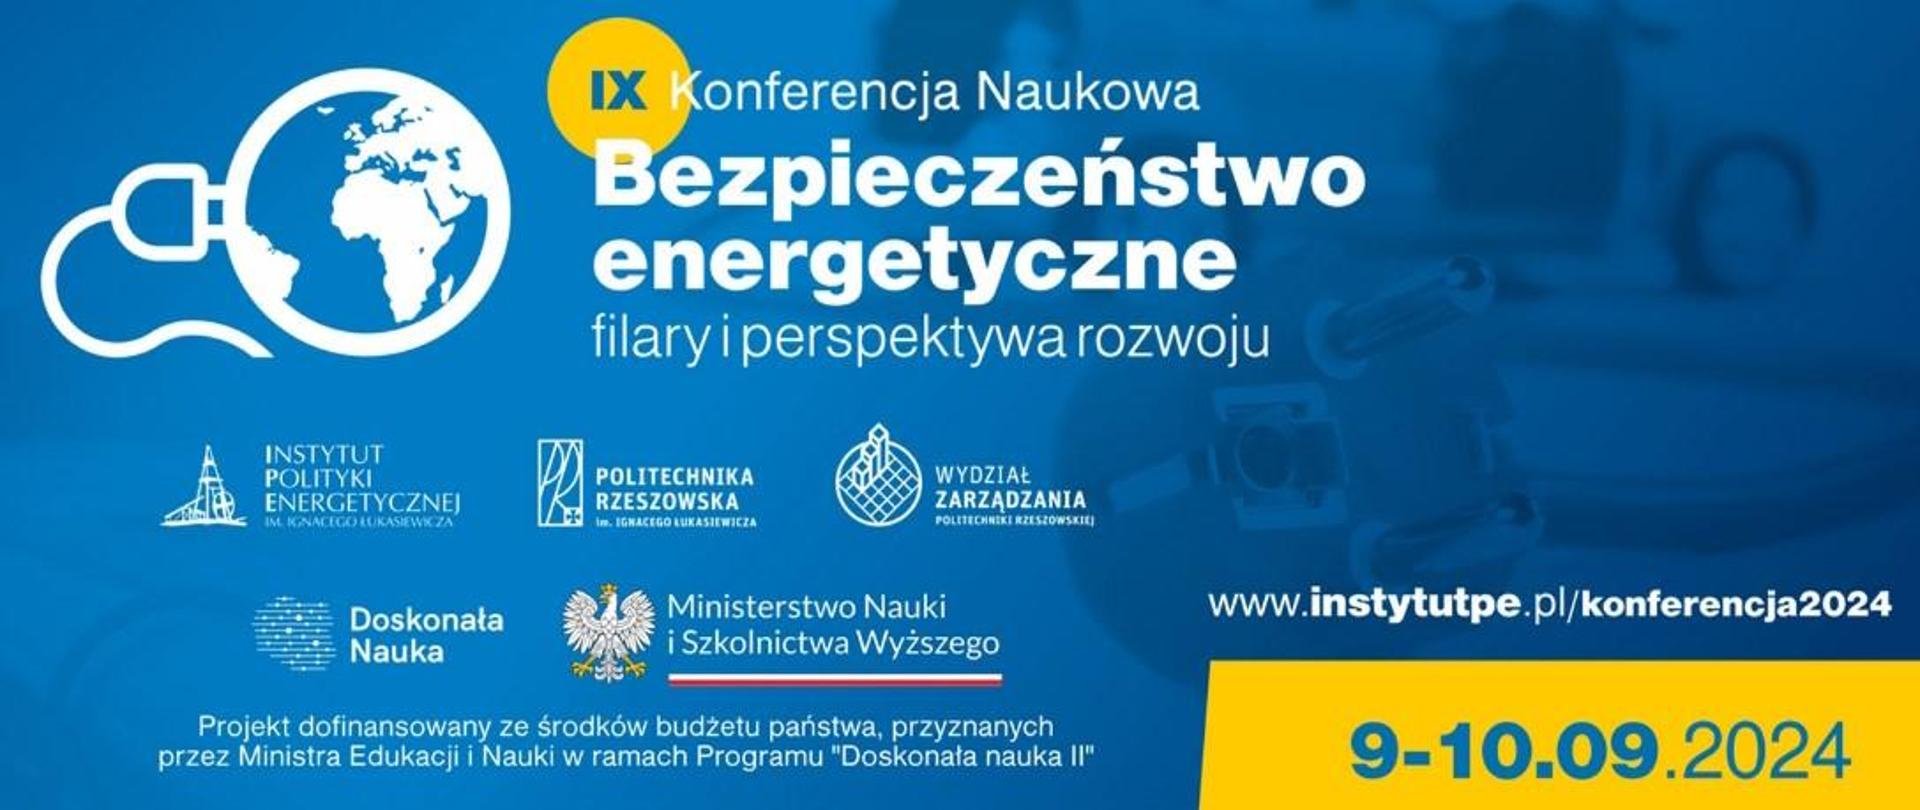 Plakat informacyjno-promocyjny oraz informacja o wydarzeniu , które odbędzie 9-10 września 2024 w Rzeszowie.